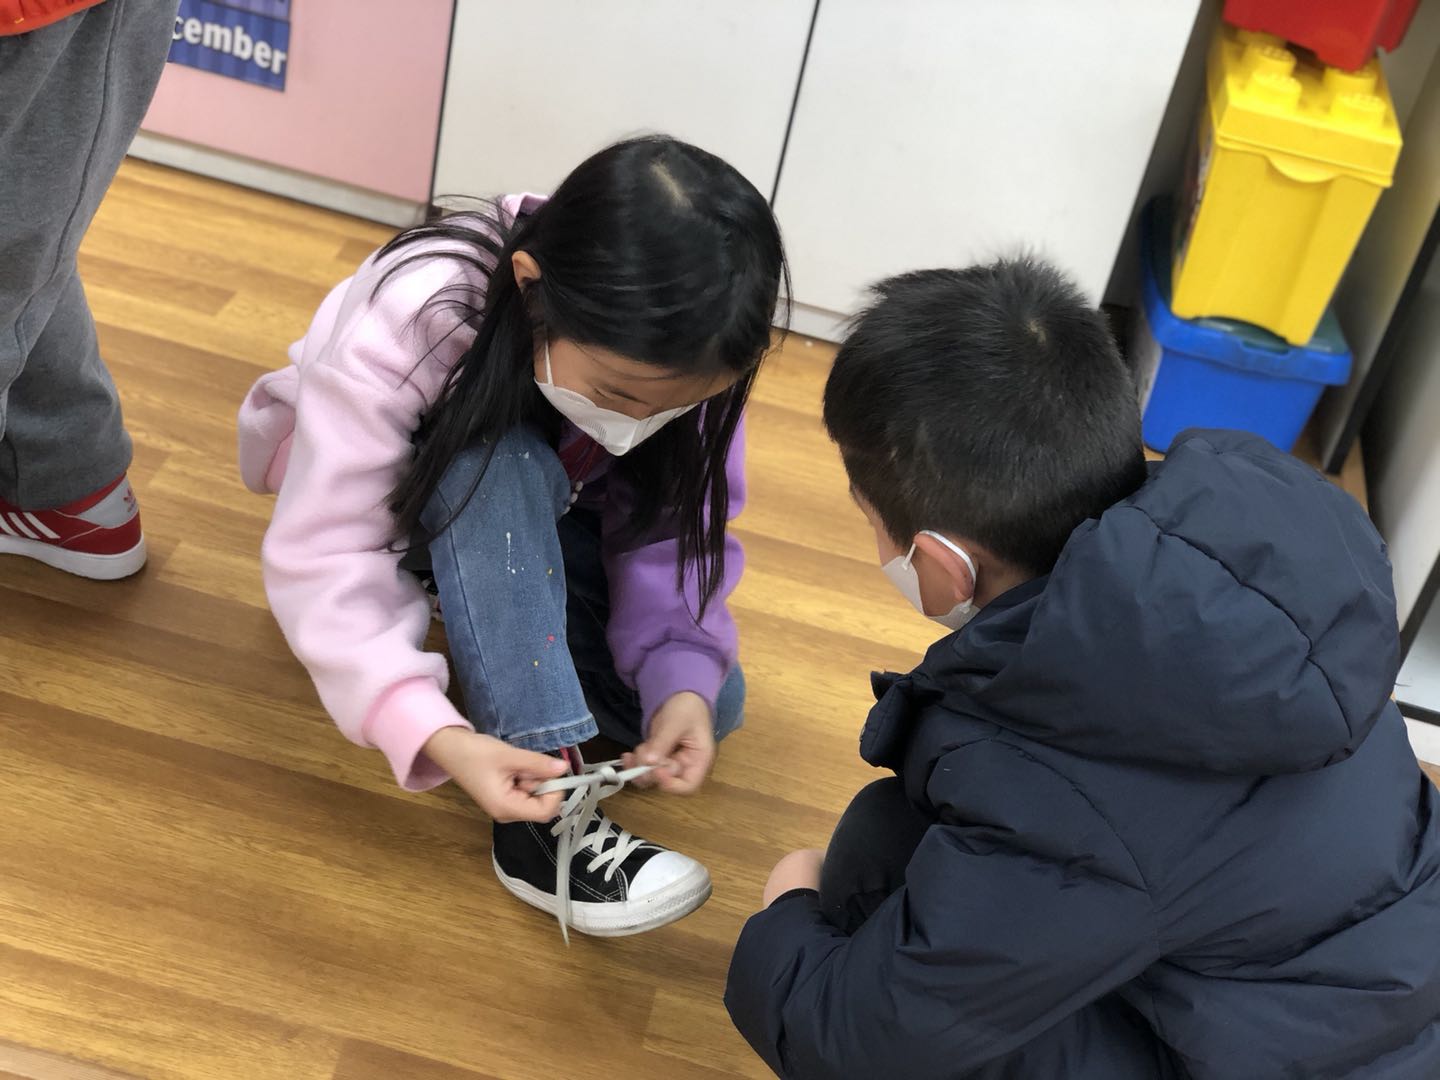 南京幼儿园复学了 大班的孩子有序入园_江南时报